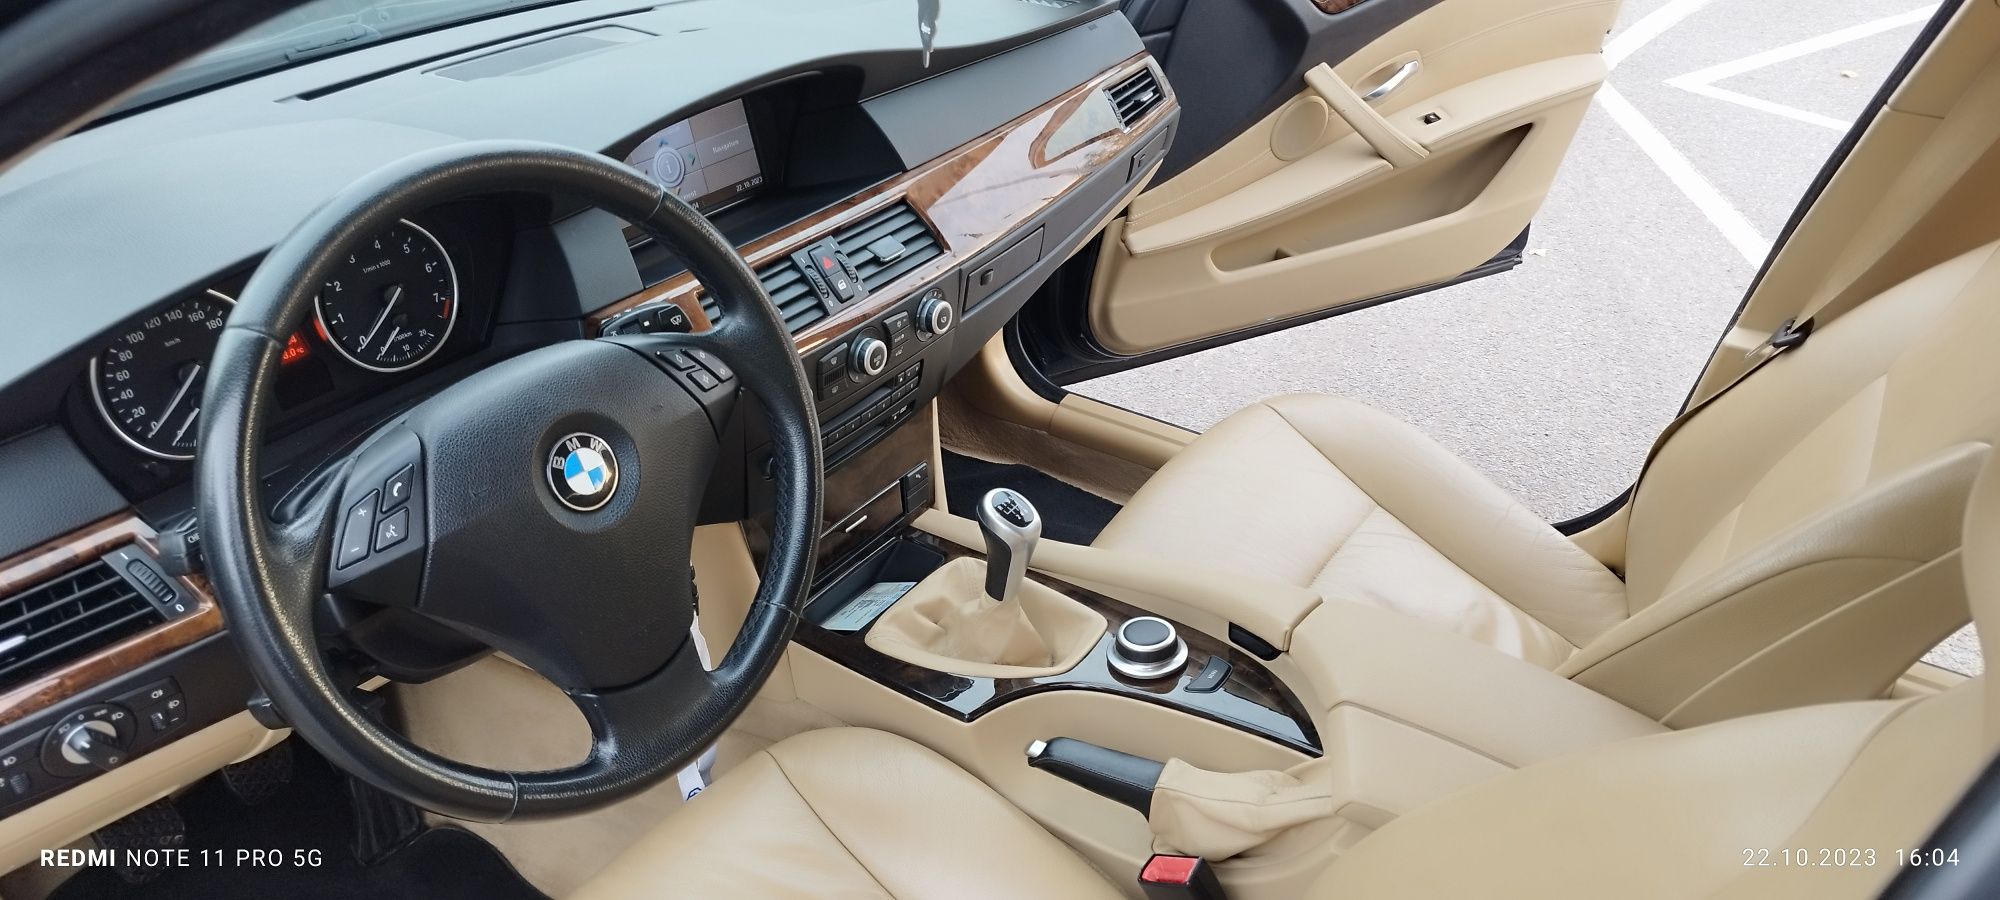 Продам BMW 520, 2008року, бензин, механіка, свіжопригнана